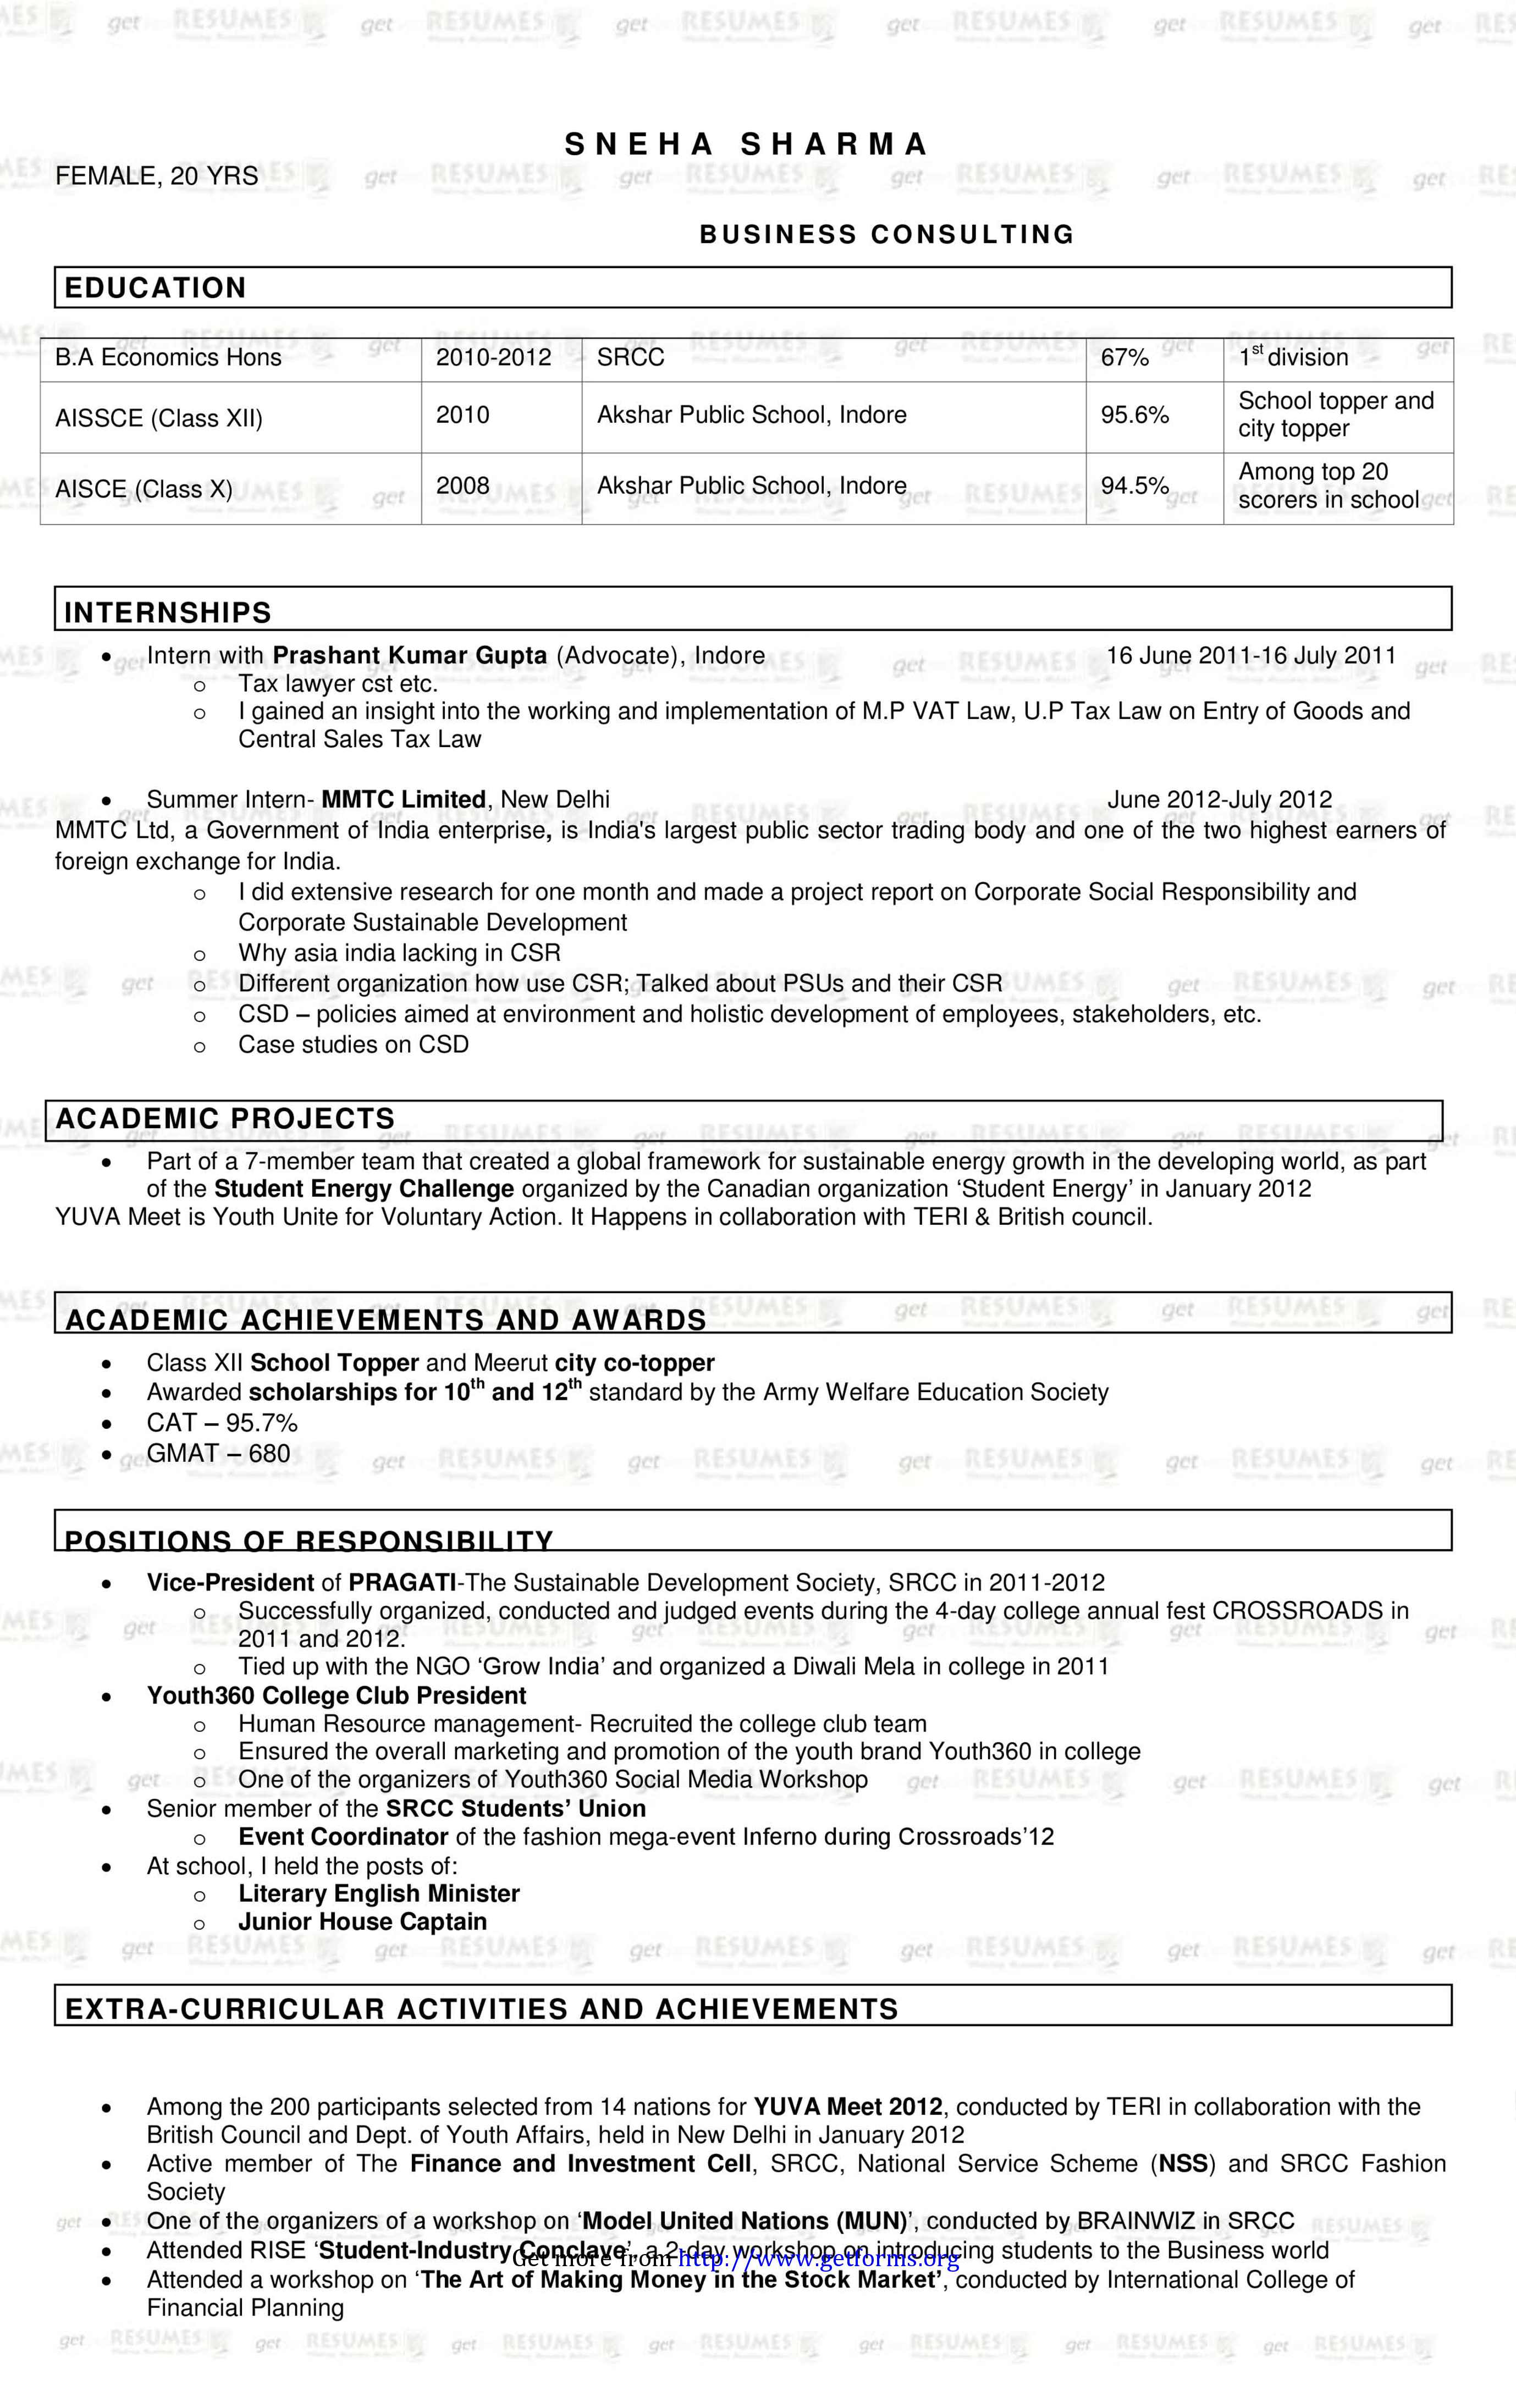 Sample Resume for Freshers 2